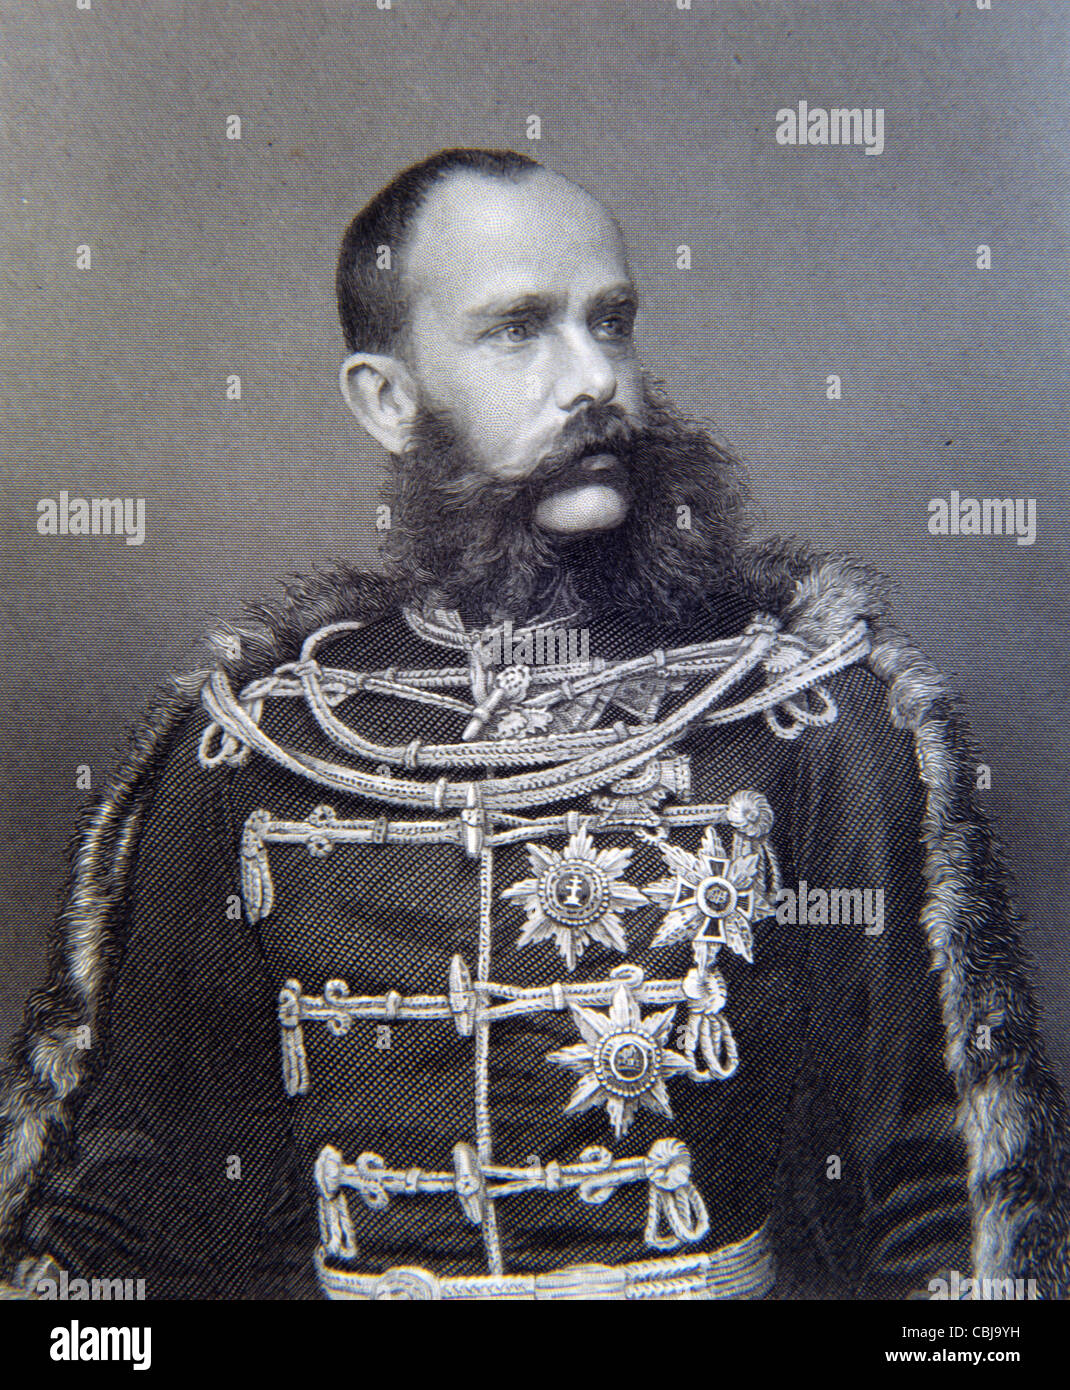 Portrait de Franz Joseph I ou de François Joseph I, empereur d'Autriche (1848-1916) et roi de Hongrie (1867-1916) Portrait en uniforme militaire. Illustration ancienne ou gravure Banque D'Images